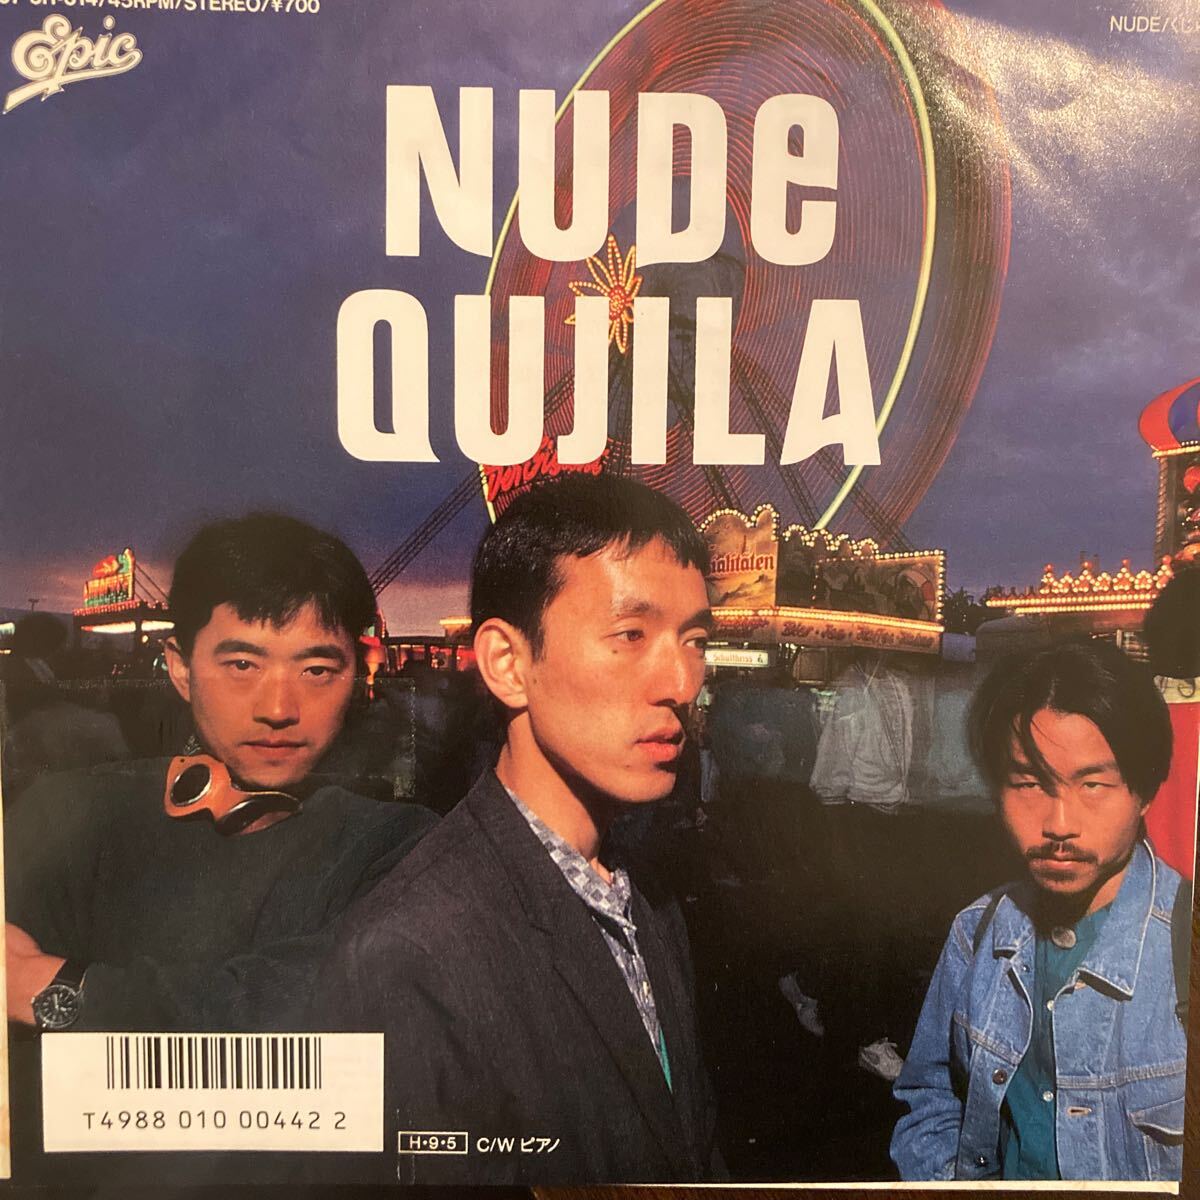 くじら QUJILA / Nude - ピアノ 邦楽 EP 7inch 見本盤 非売品 プロモ レコード ニューウェーブ ブギーファンク_画像1